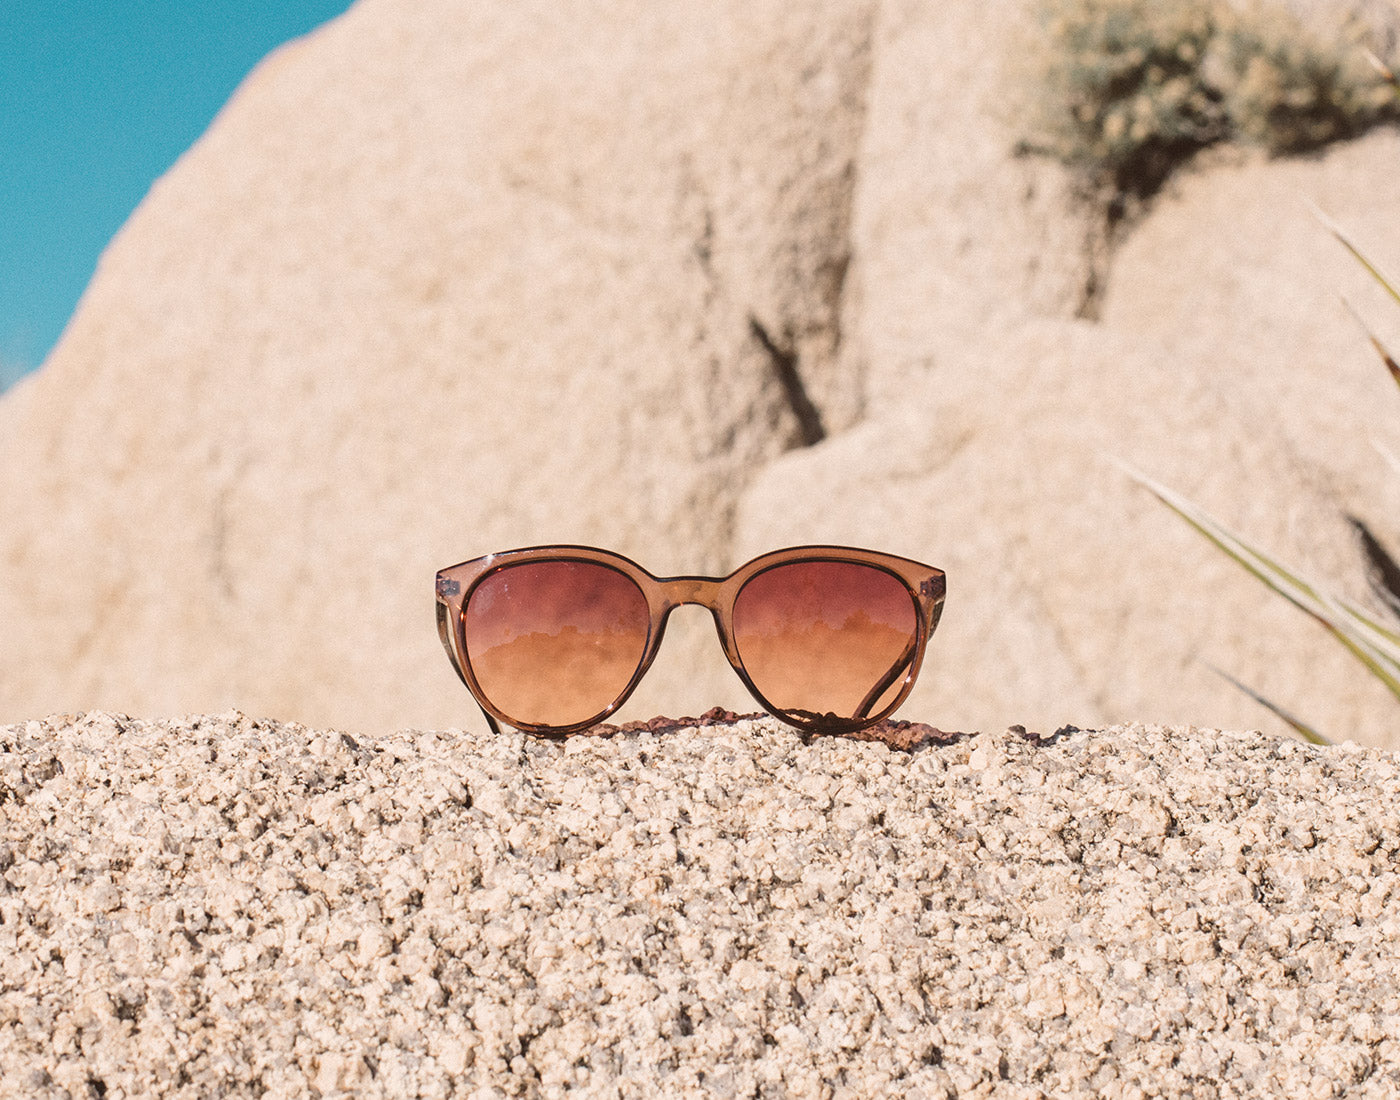 sunski makani sunglasses sitting on a rock